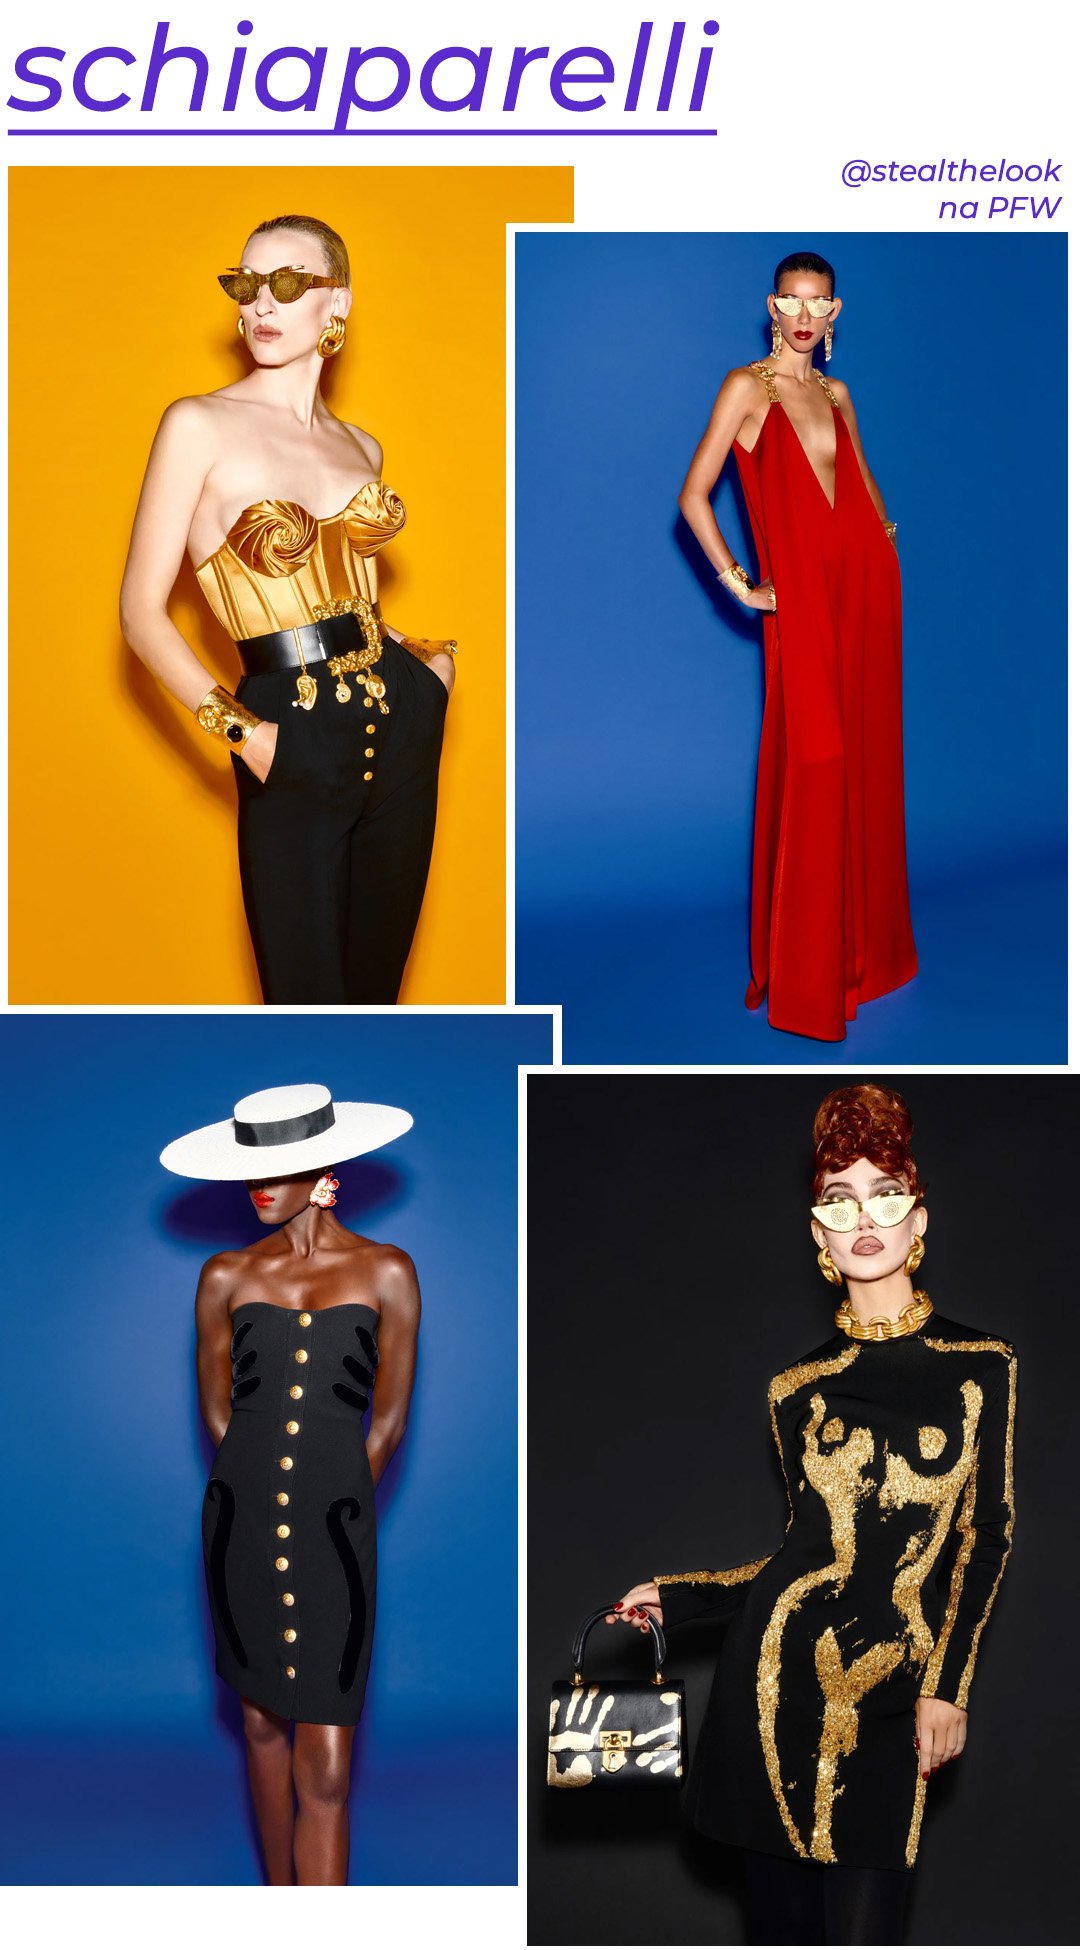 Schiaparelli S/S 2023 - roupas diversas - Paris Fashion Week - Primavera - modelos posando em cenários coloridos - https://stealthelook.com.br